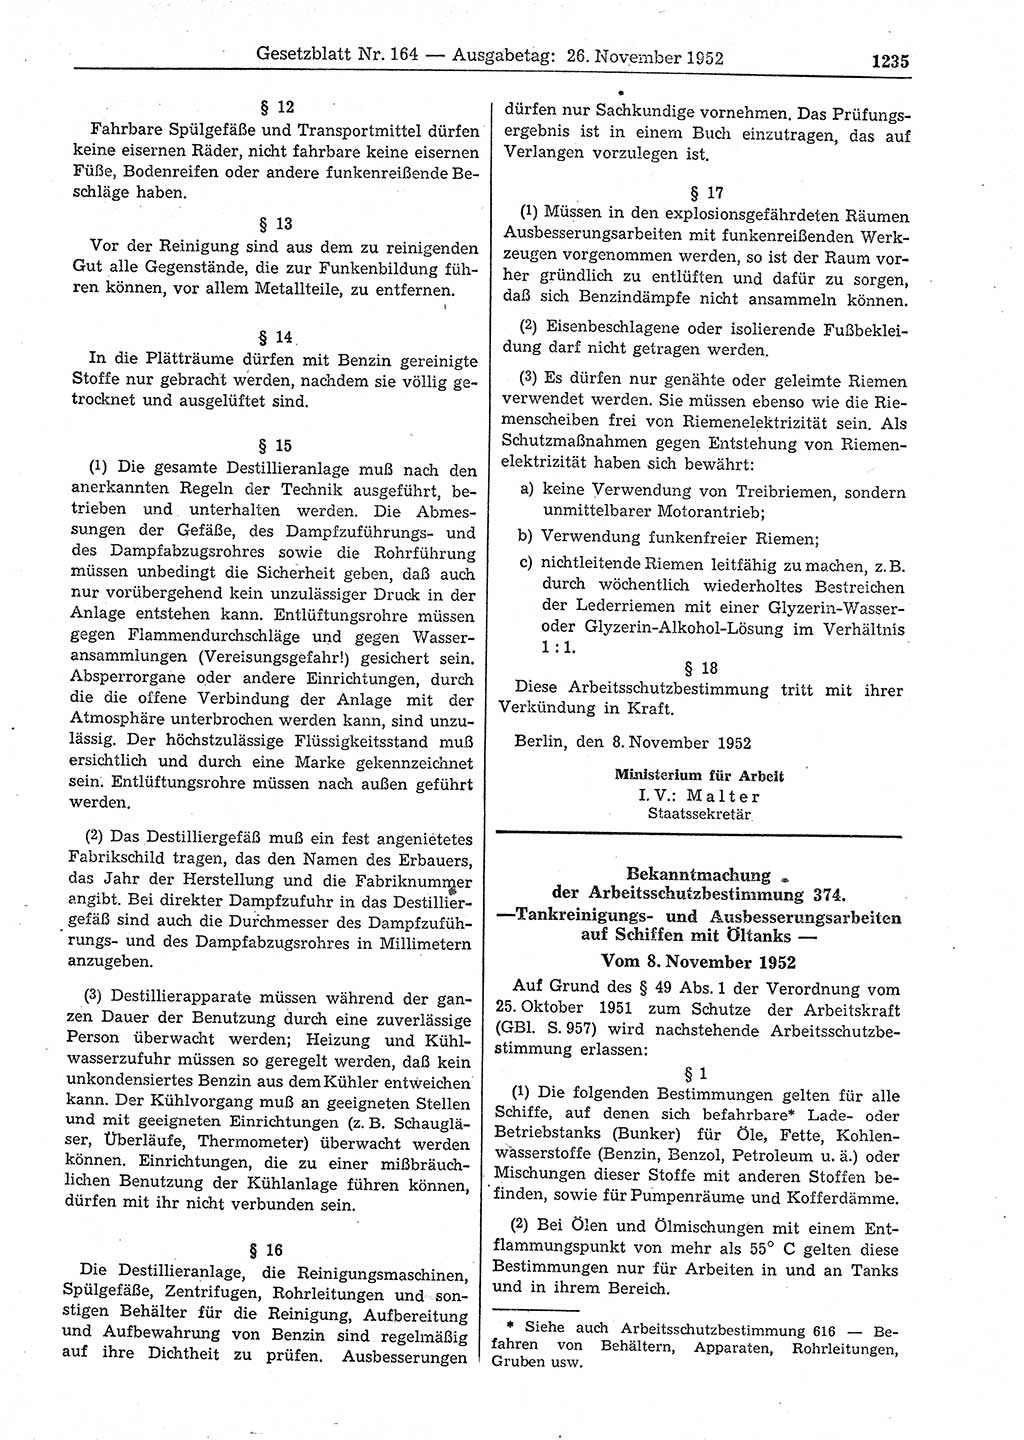 Gesetzblatt (GBl.) der Deutschen Demokratischen Republik (DDR) 1952, Seite 1235 (GBl. DDR 1952, S. 1235)